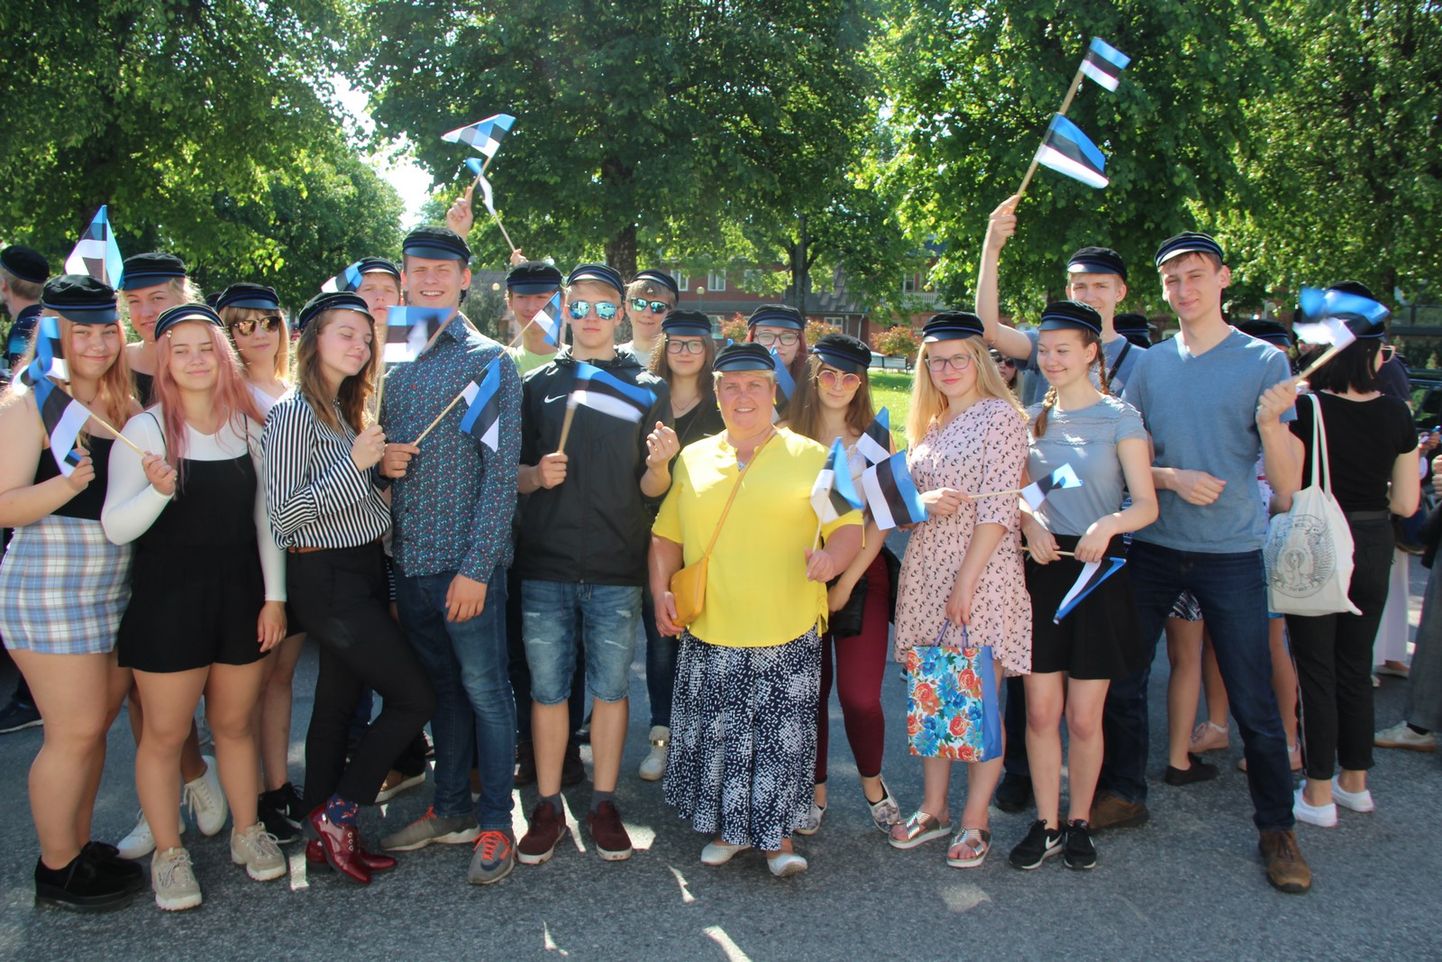 4. juuni on Eesti lipu päev, Otepää, Eesti lipu häll, on seda päeva tähistamas.